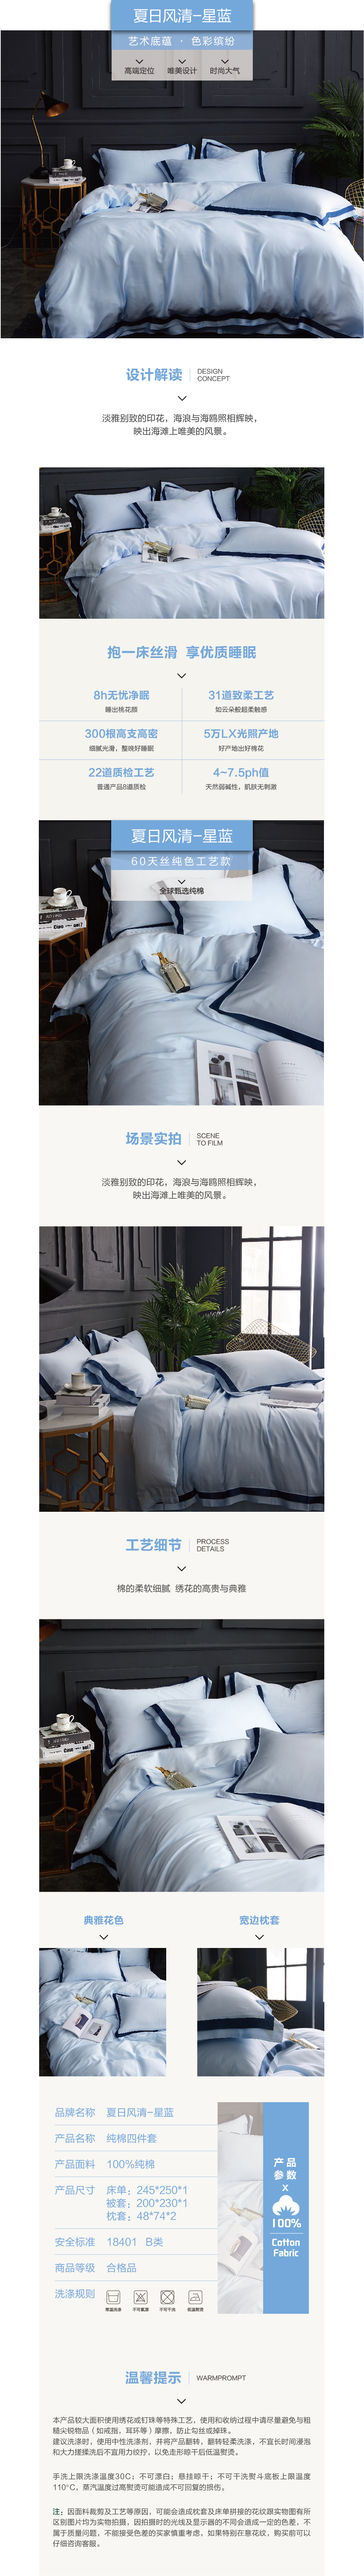 床上用品 纯棉四件套 蕾丝工艺 60天丝纯色工艺系列 星蓝